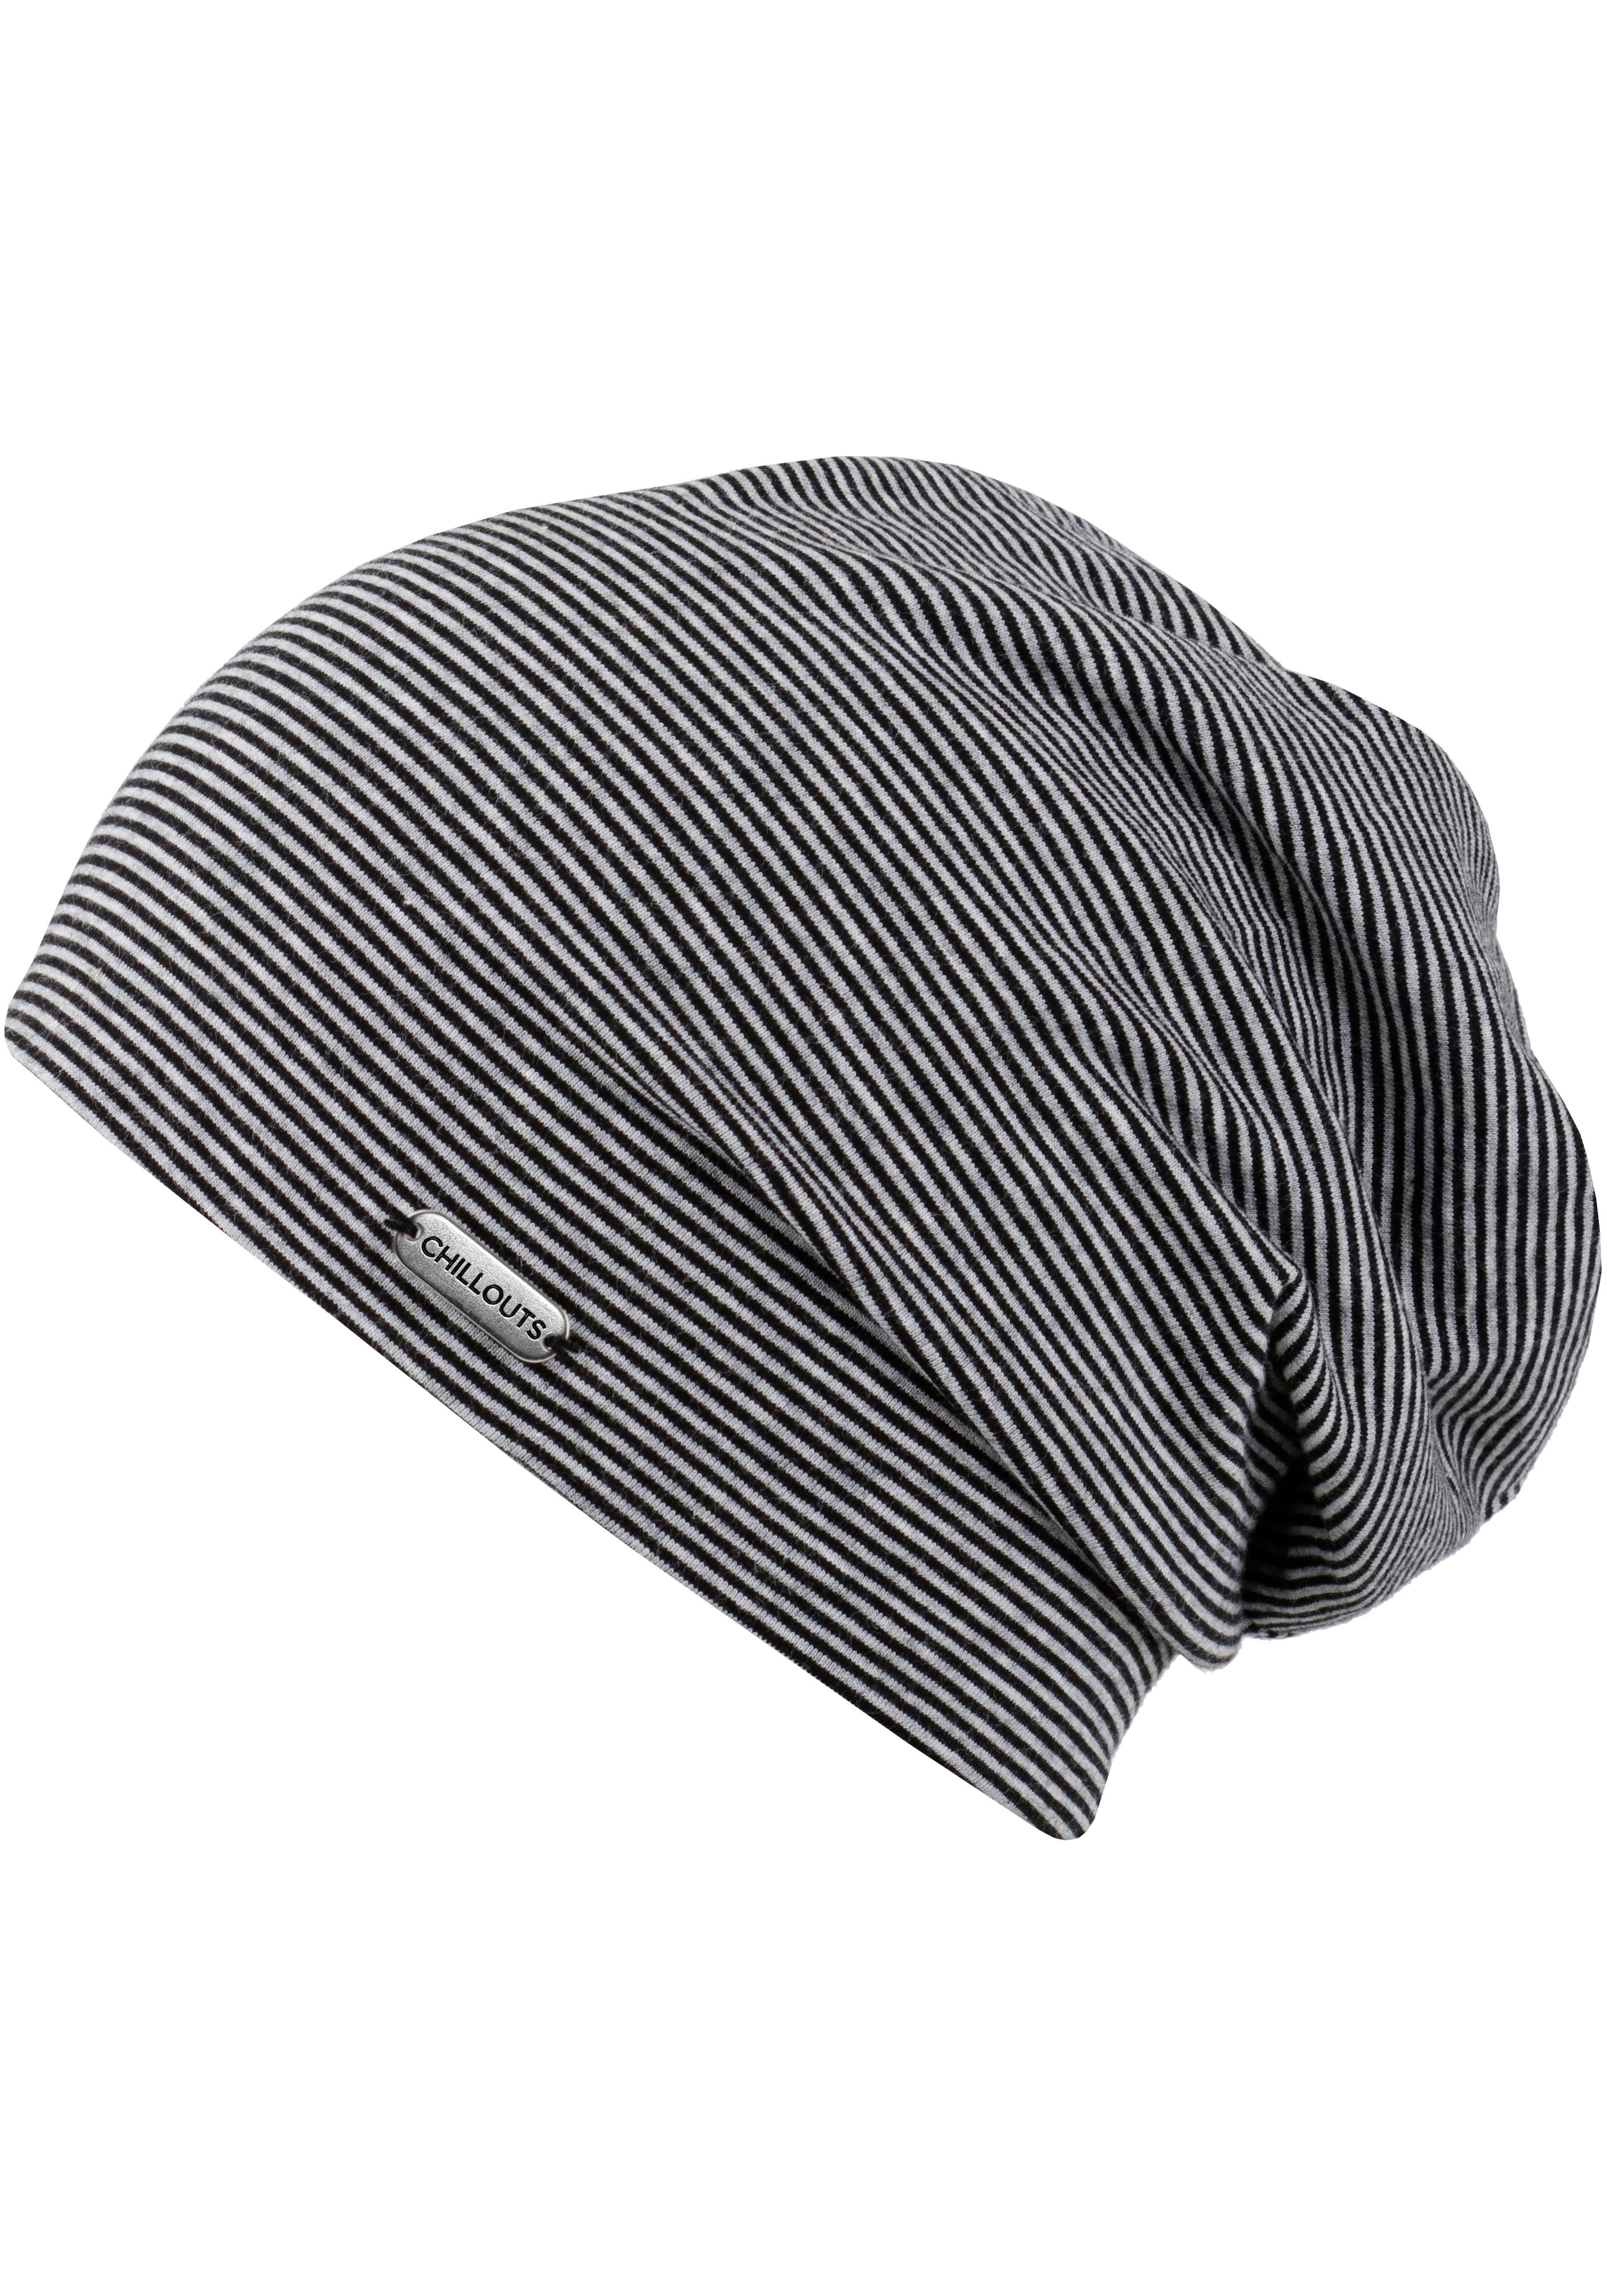 Beanie Pittsburgh Hat, schwarz-grau chillouts gestreift